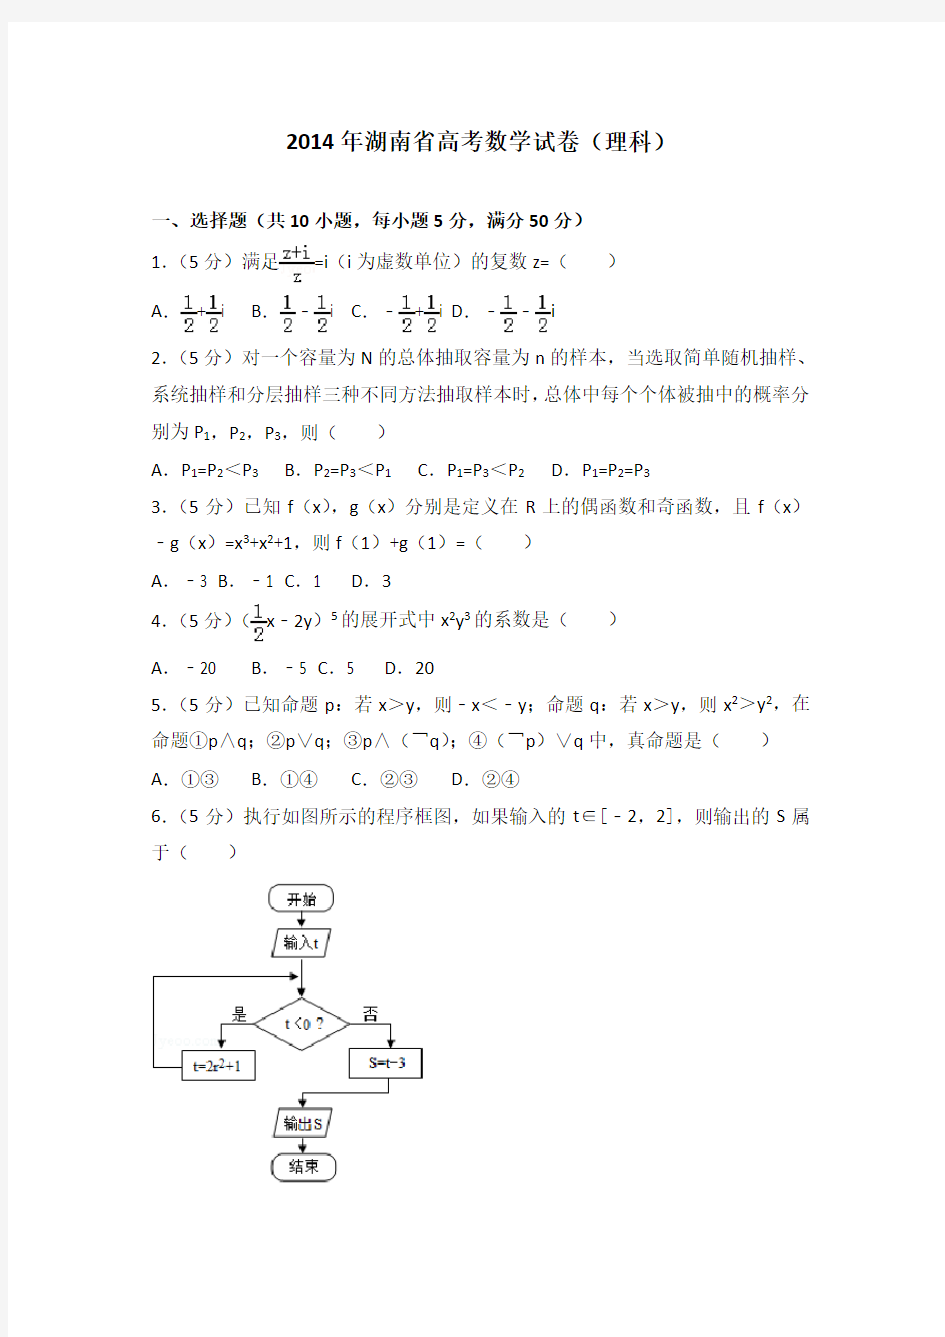 2014年湖南省高考数学试卷(理科)附送答案